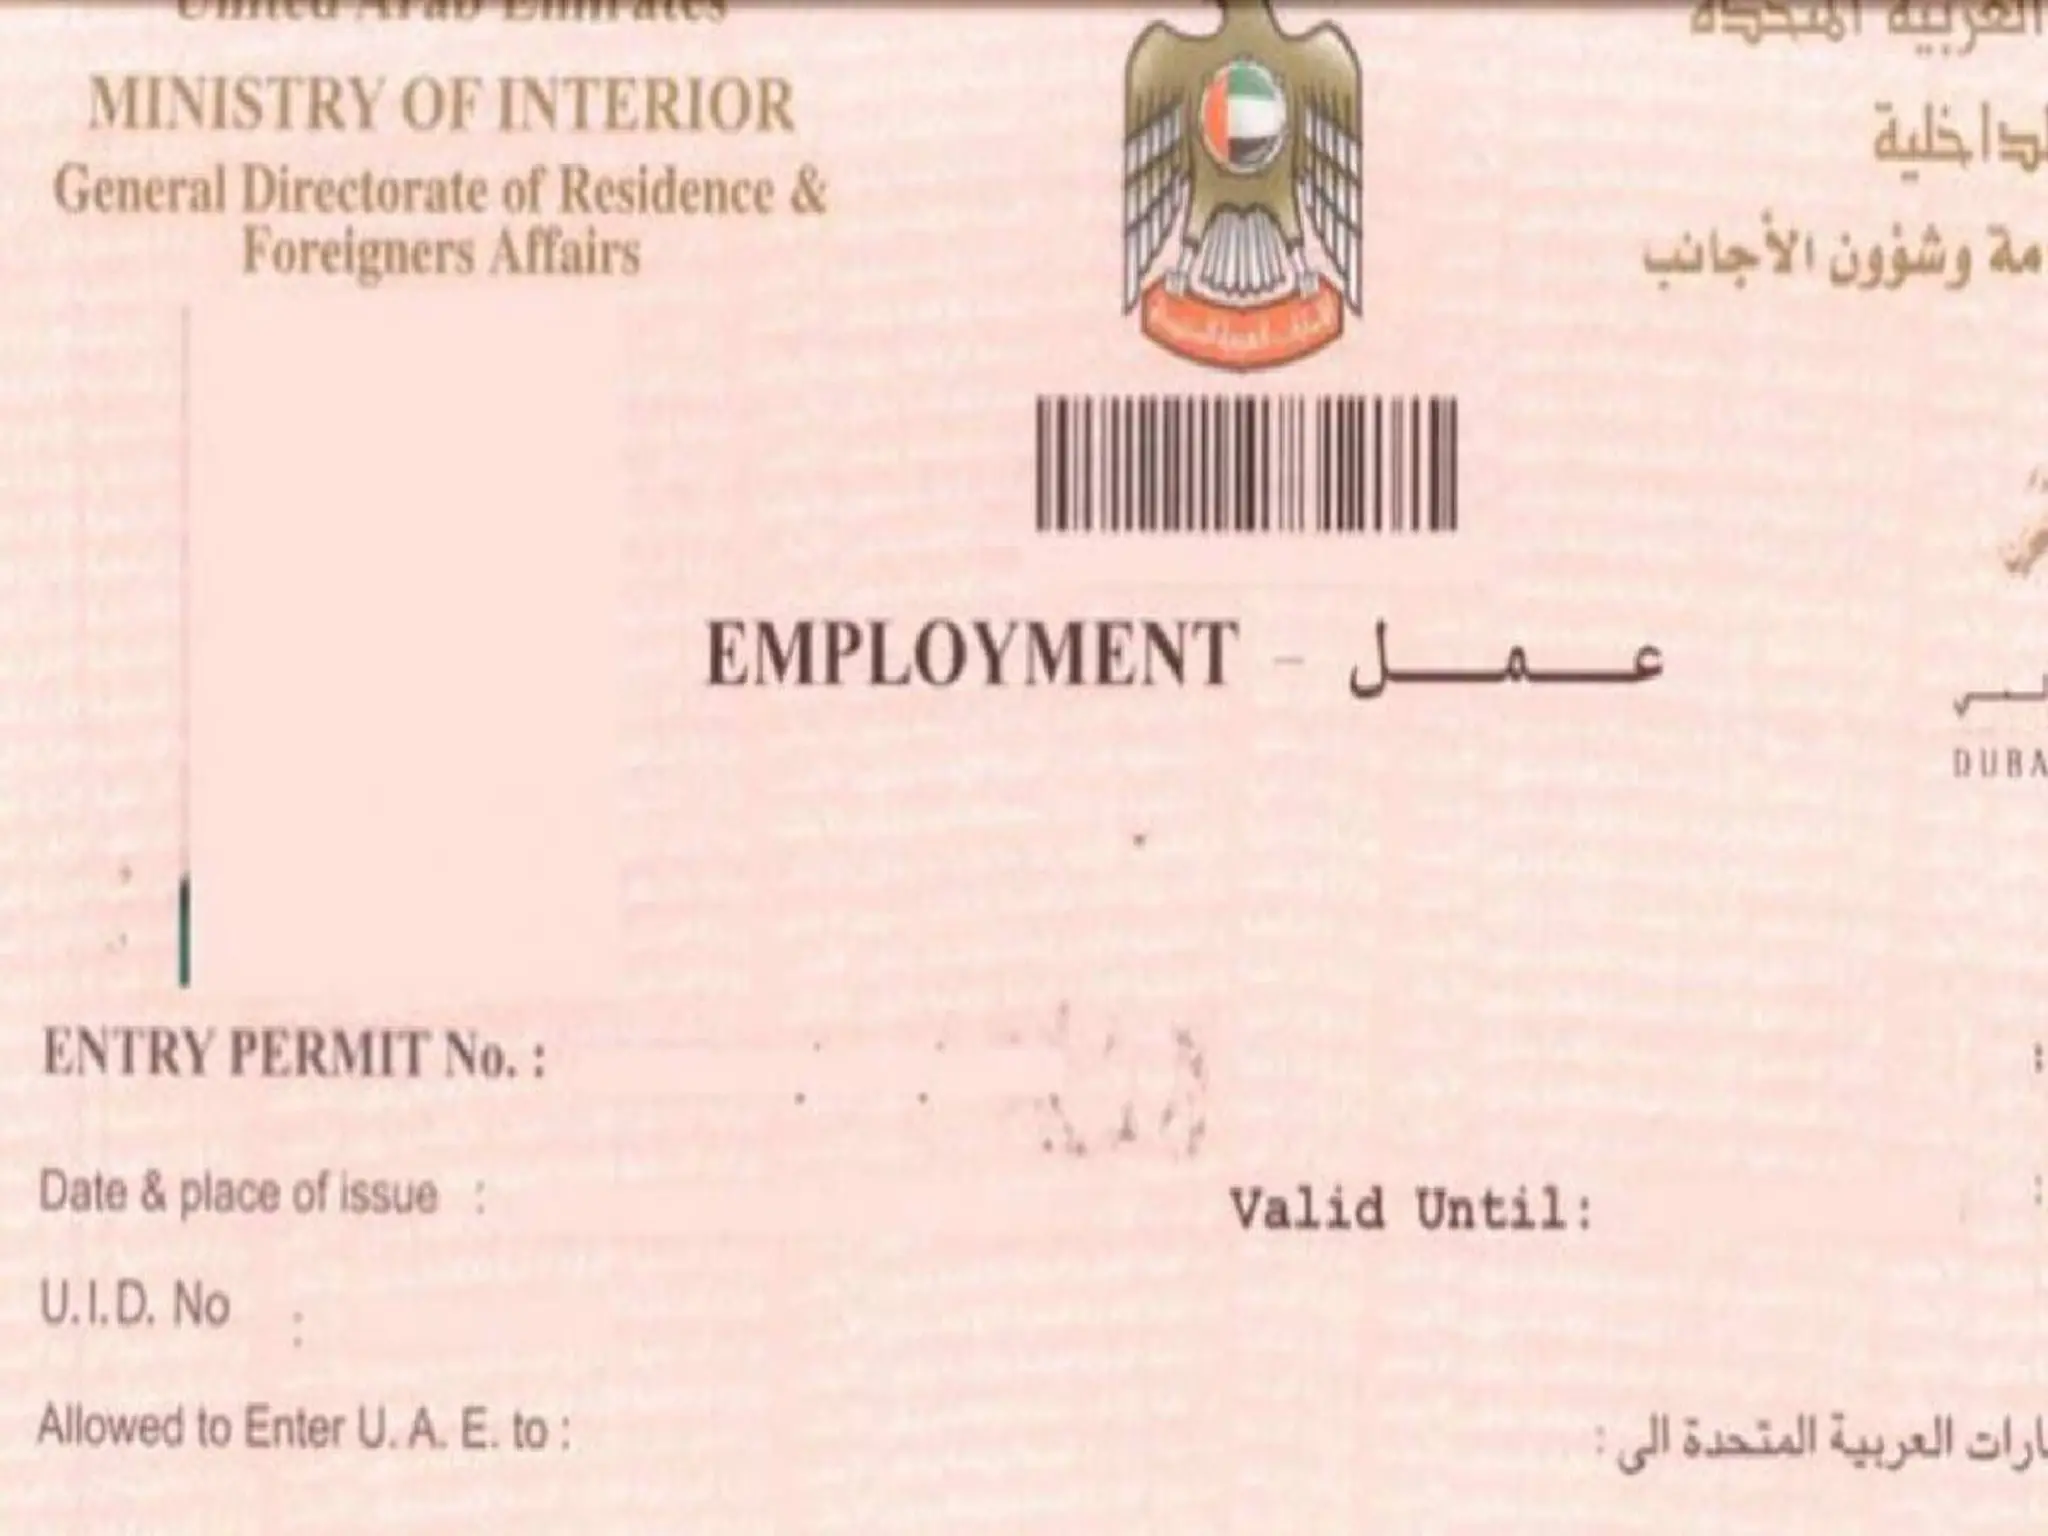 الإعلان عن توفير تصريح عمل مؤقت في دبي لمدة ٣ أشهر